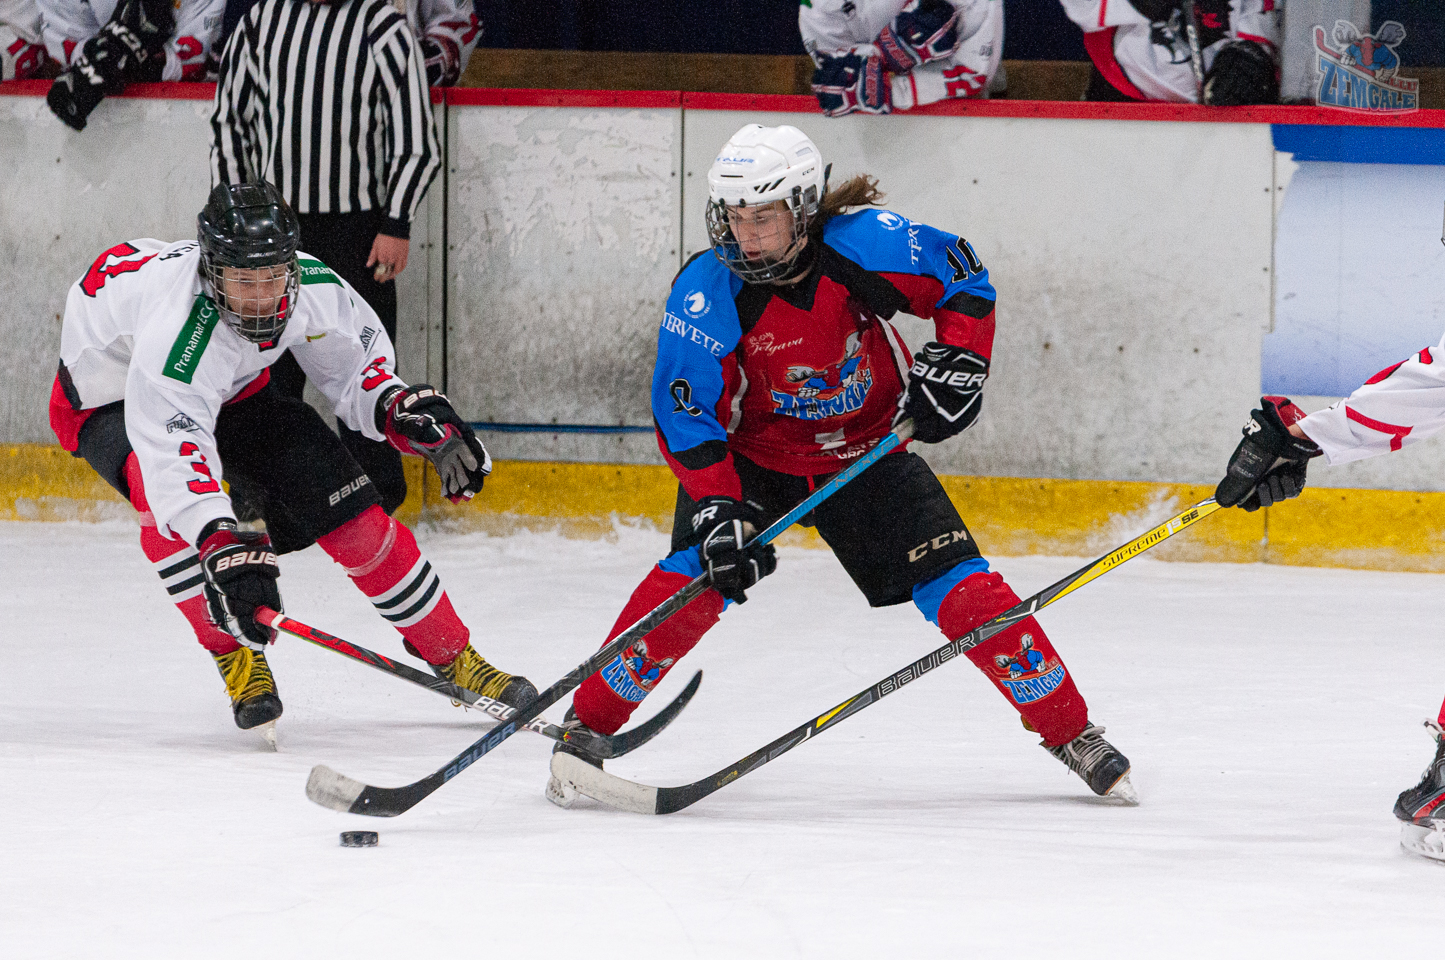 Latvijas bērnu un jauniešu hokeja čempionāta regulārā turnīra spēle starp HK “JLSS U17” un HK “Pirāti” Jelgavas ledus hallē 2019. gada 2. novembrī. Foto: Ruslans Antropovs, rusantro.com